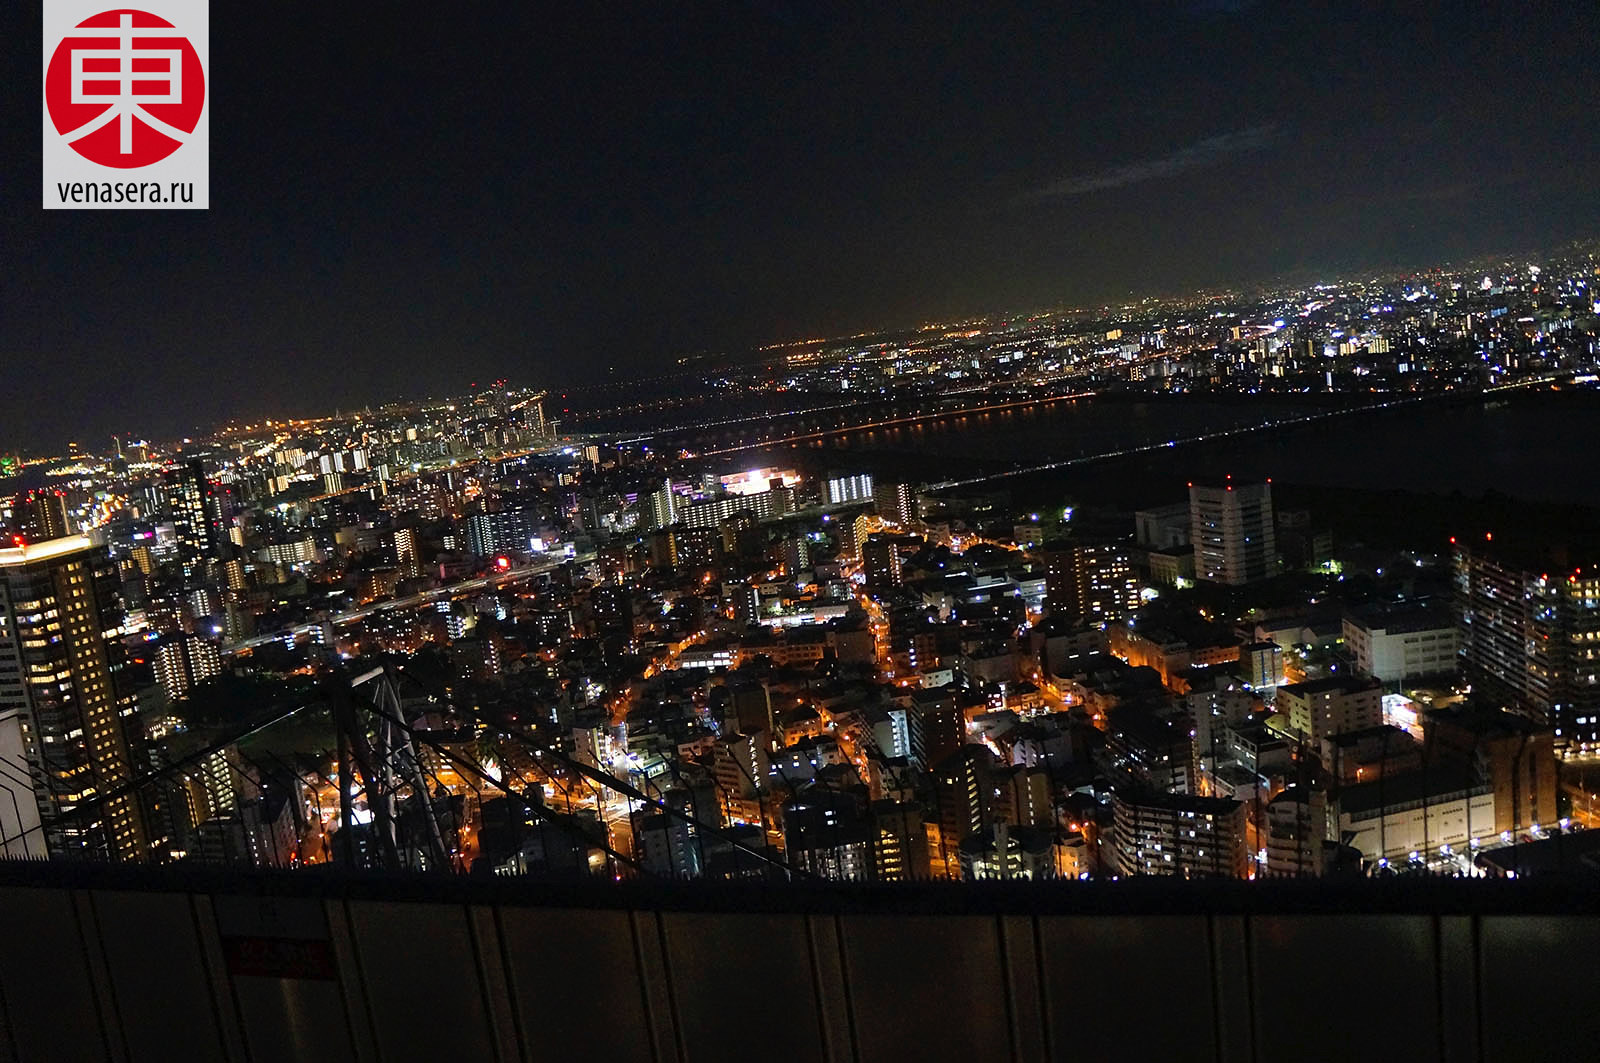 Умэда скай билдинг в Осака, Umeda Sky Building, 梅田スカイビル, Осака, Osaka, 大阪, Япония, Japan, 日本.